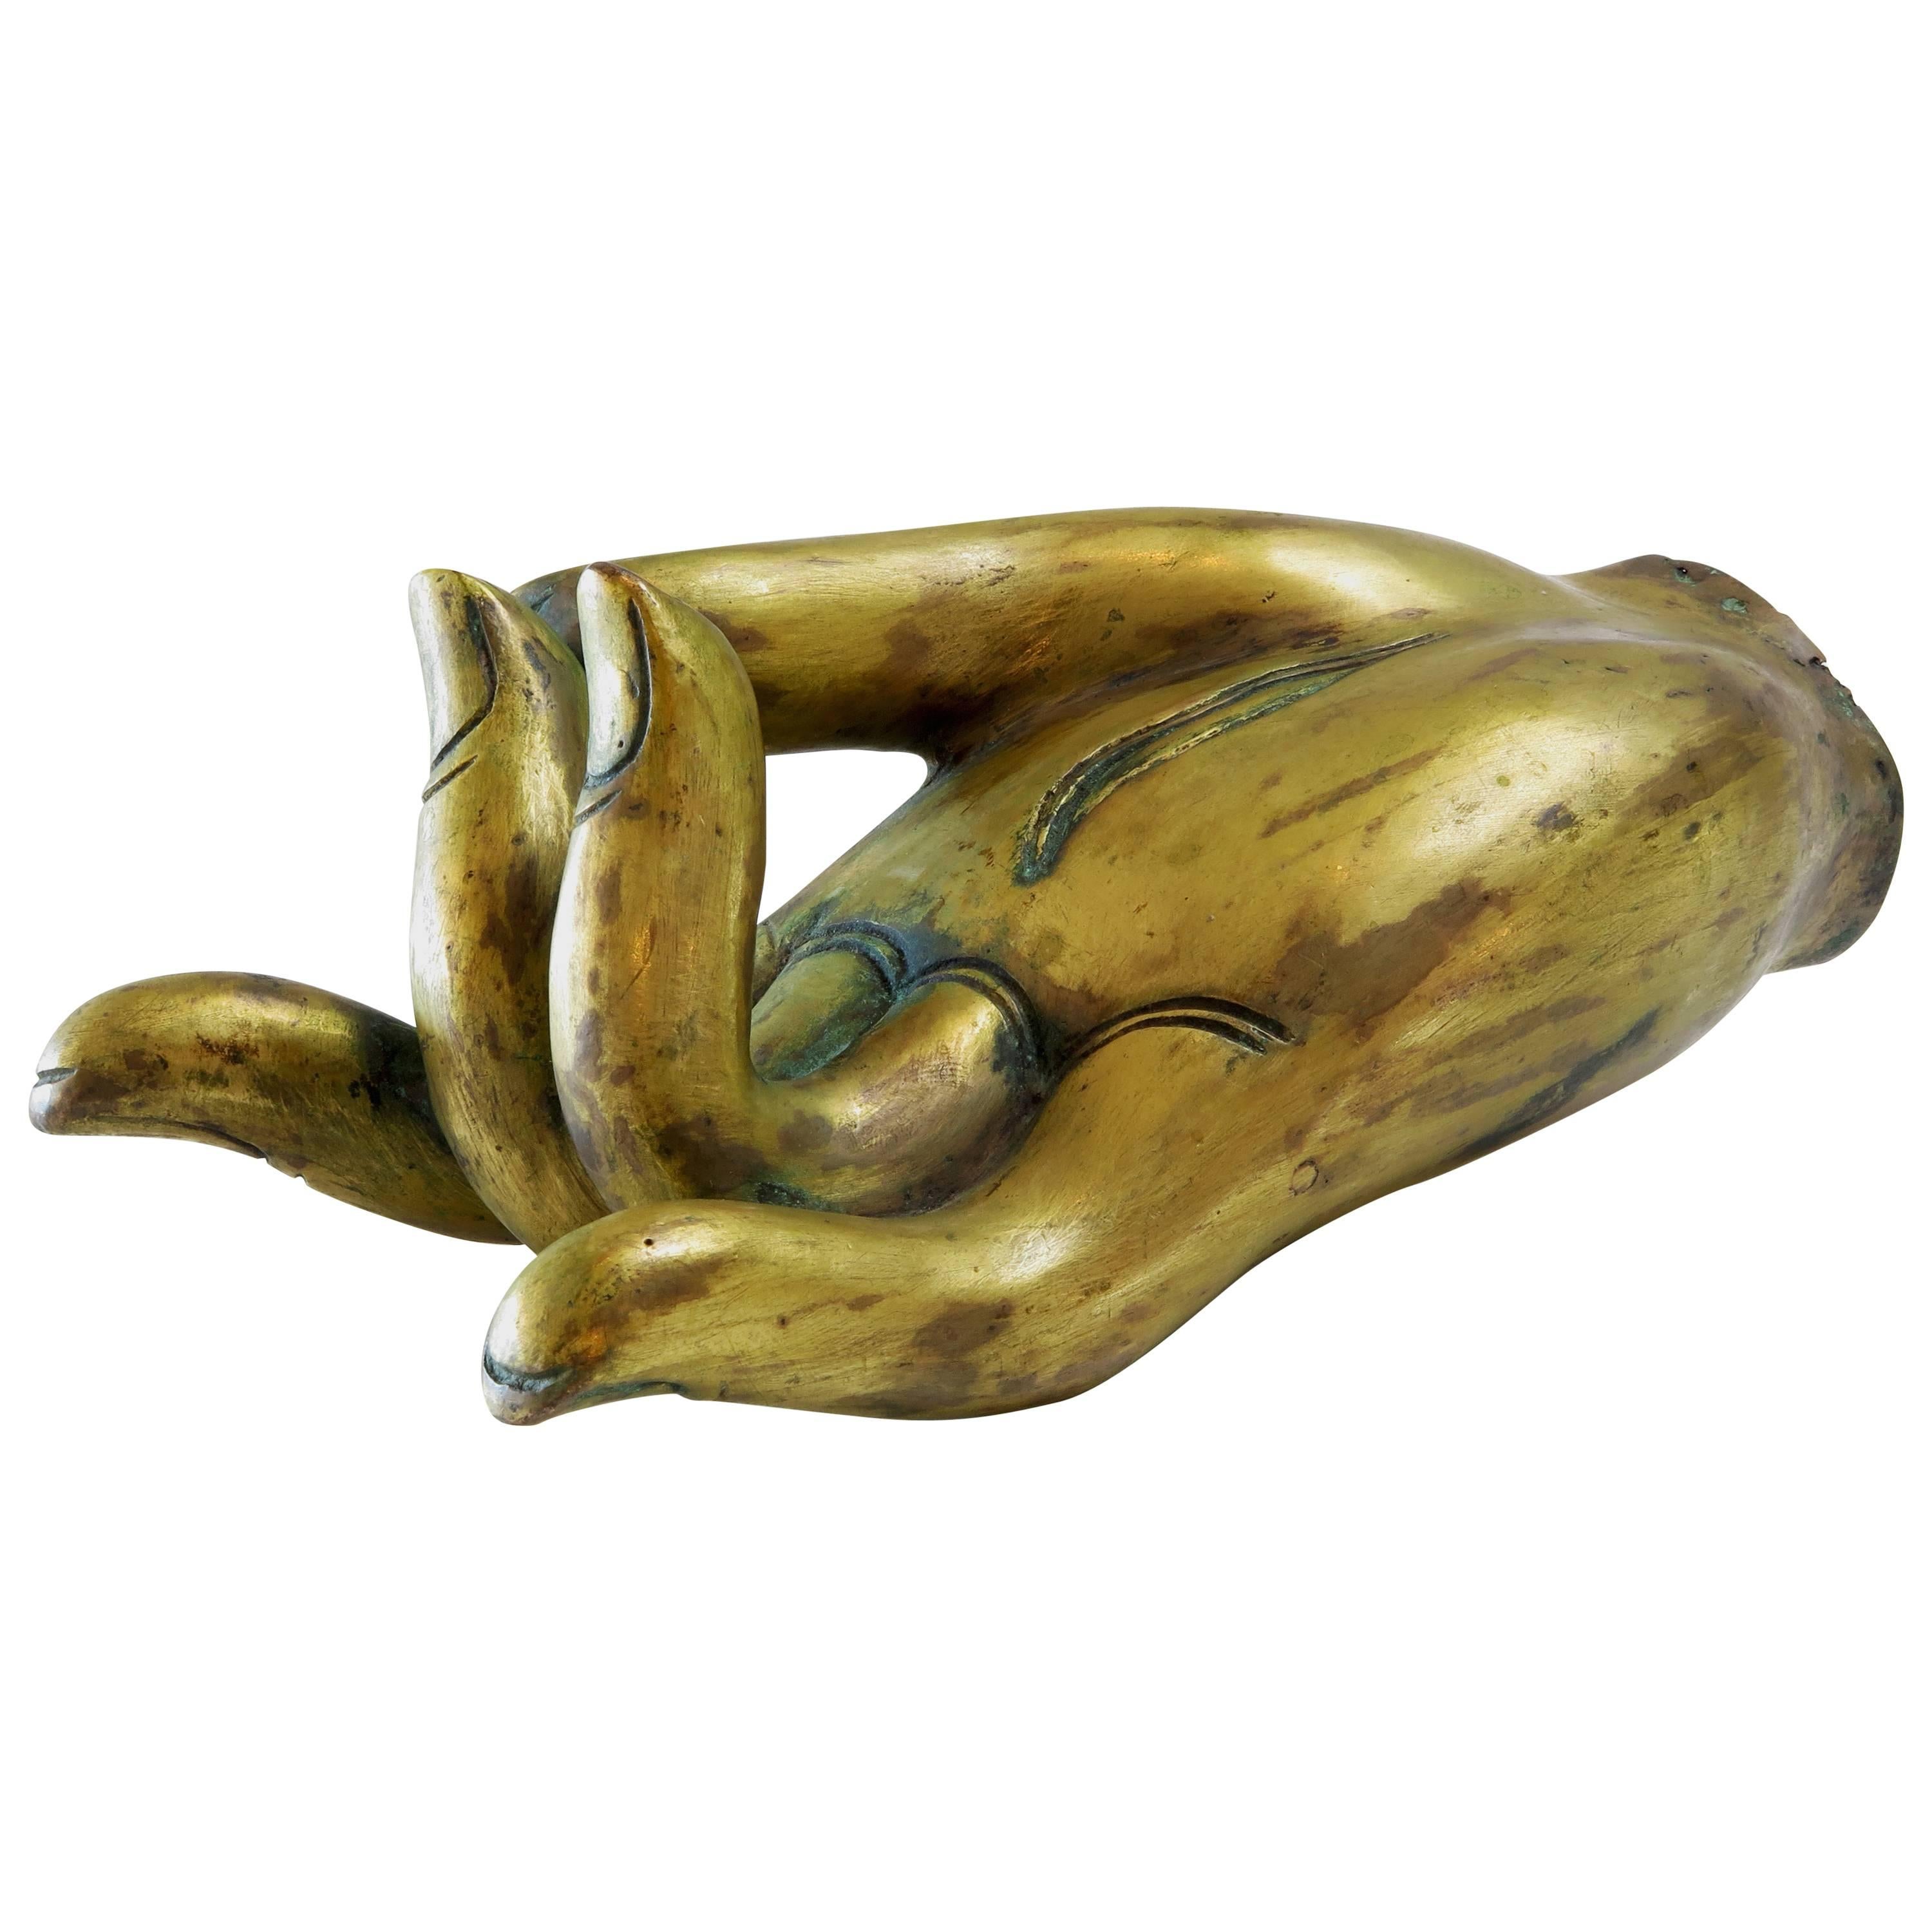 Antique Tibetan Gilt Bronze Hand of a Bodhisattva